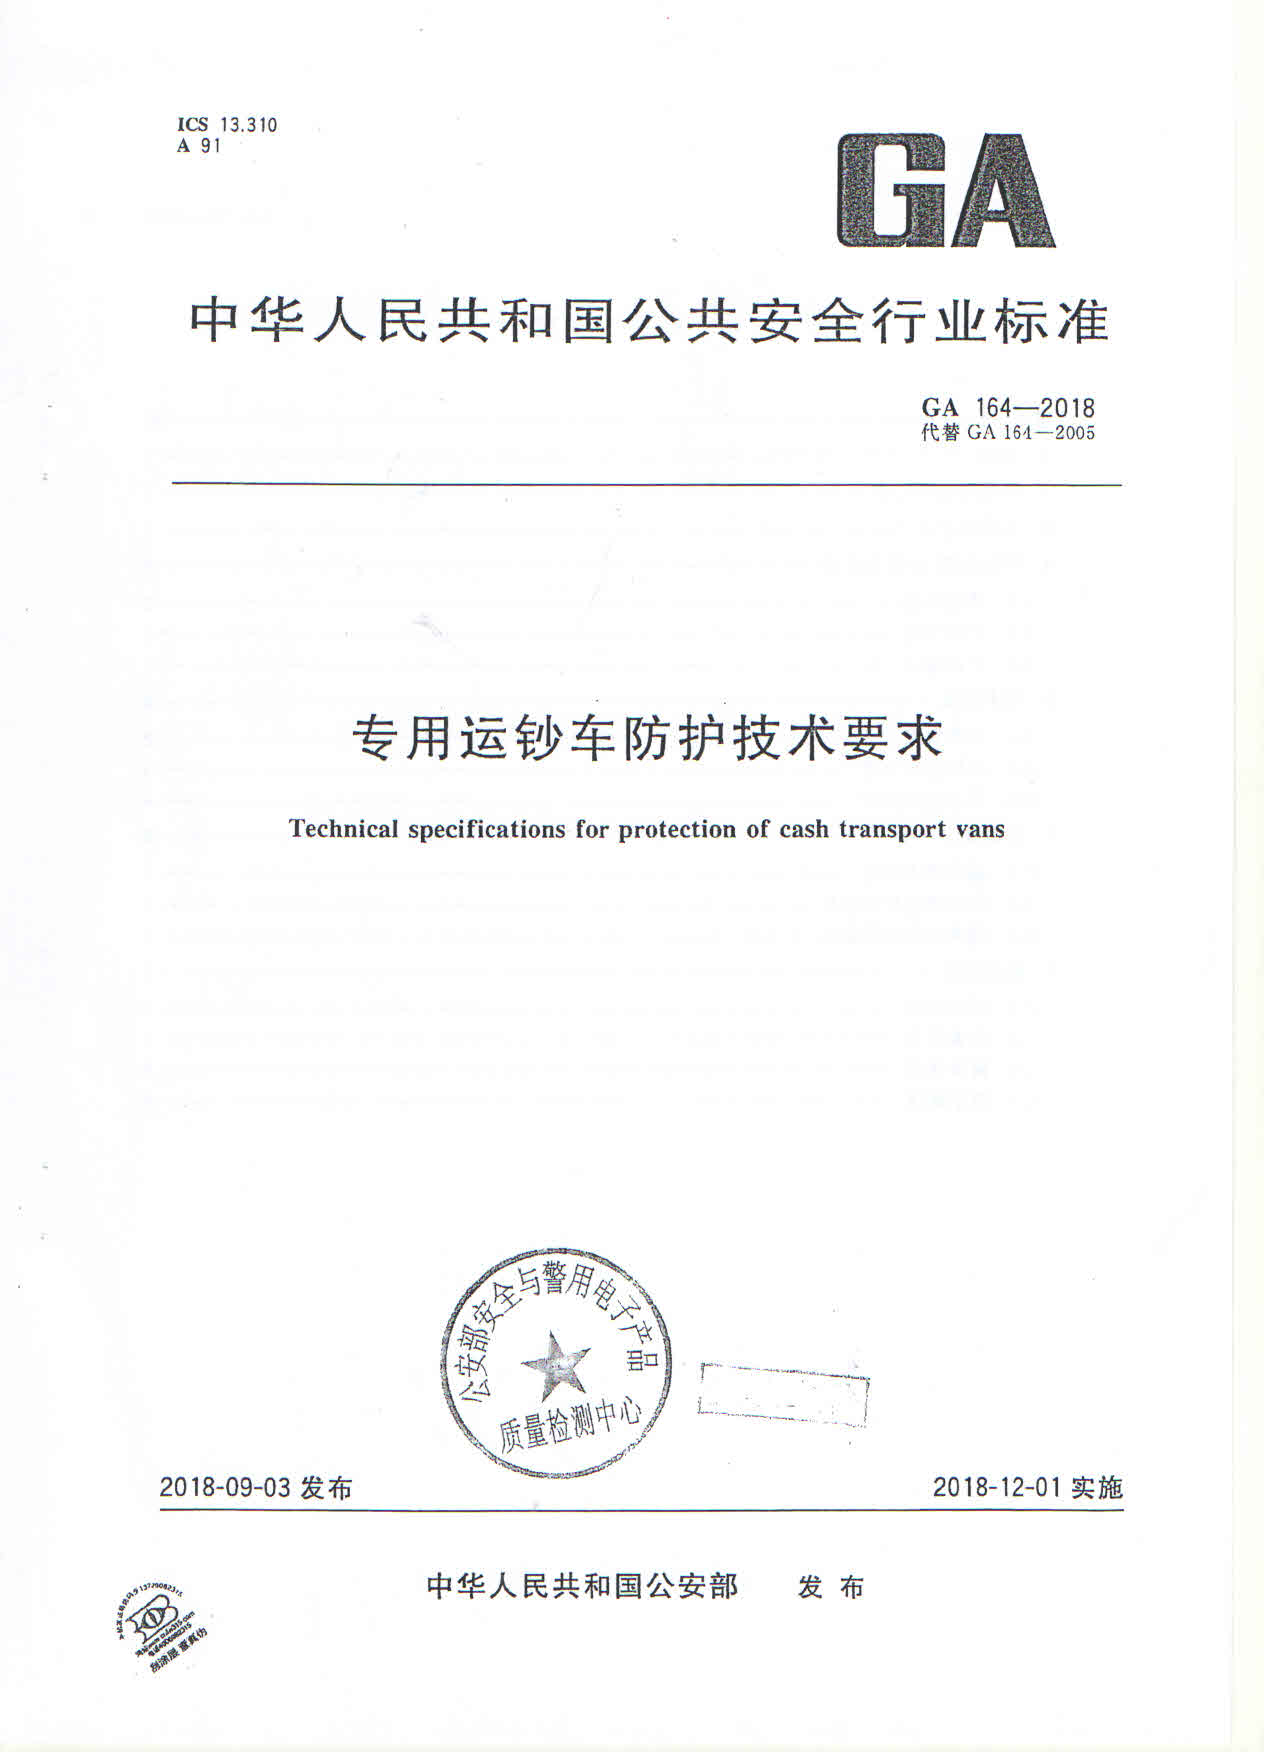 专用运钞车防护技术要求（GA164-2018）